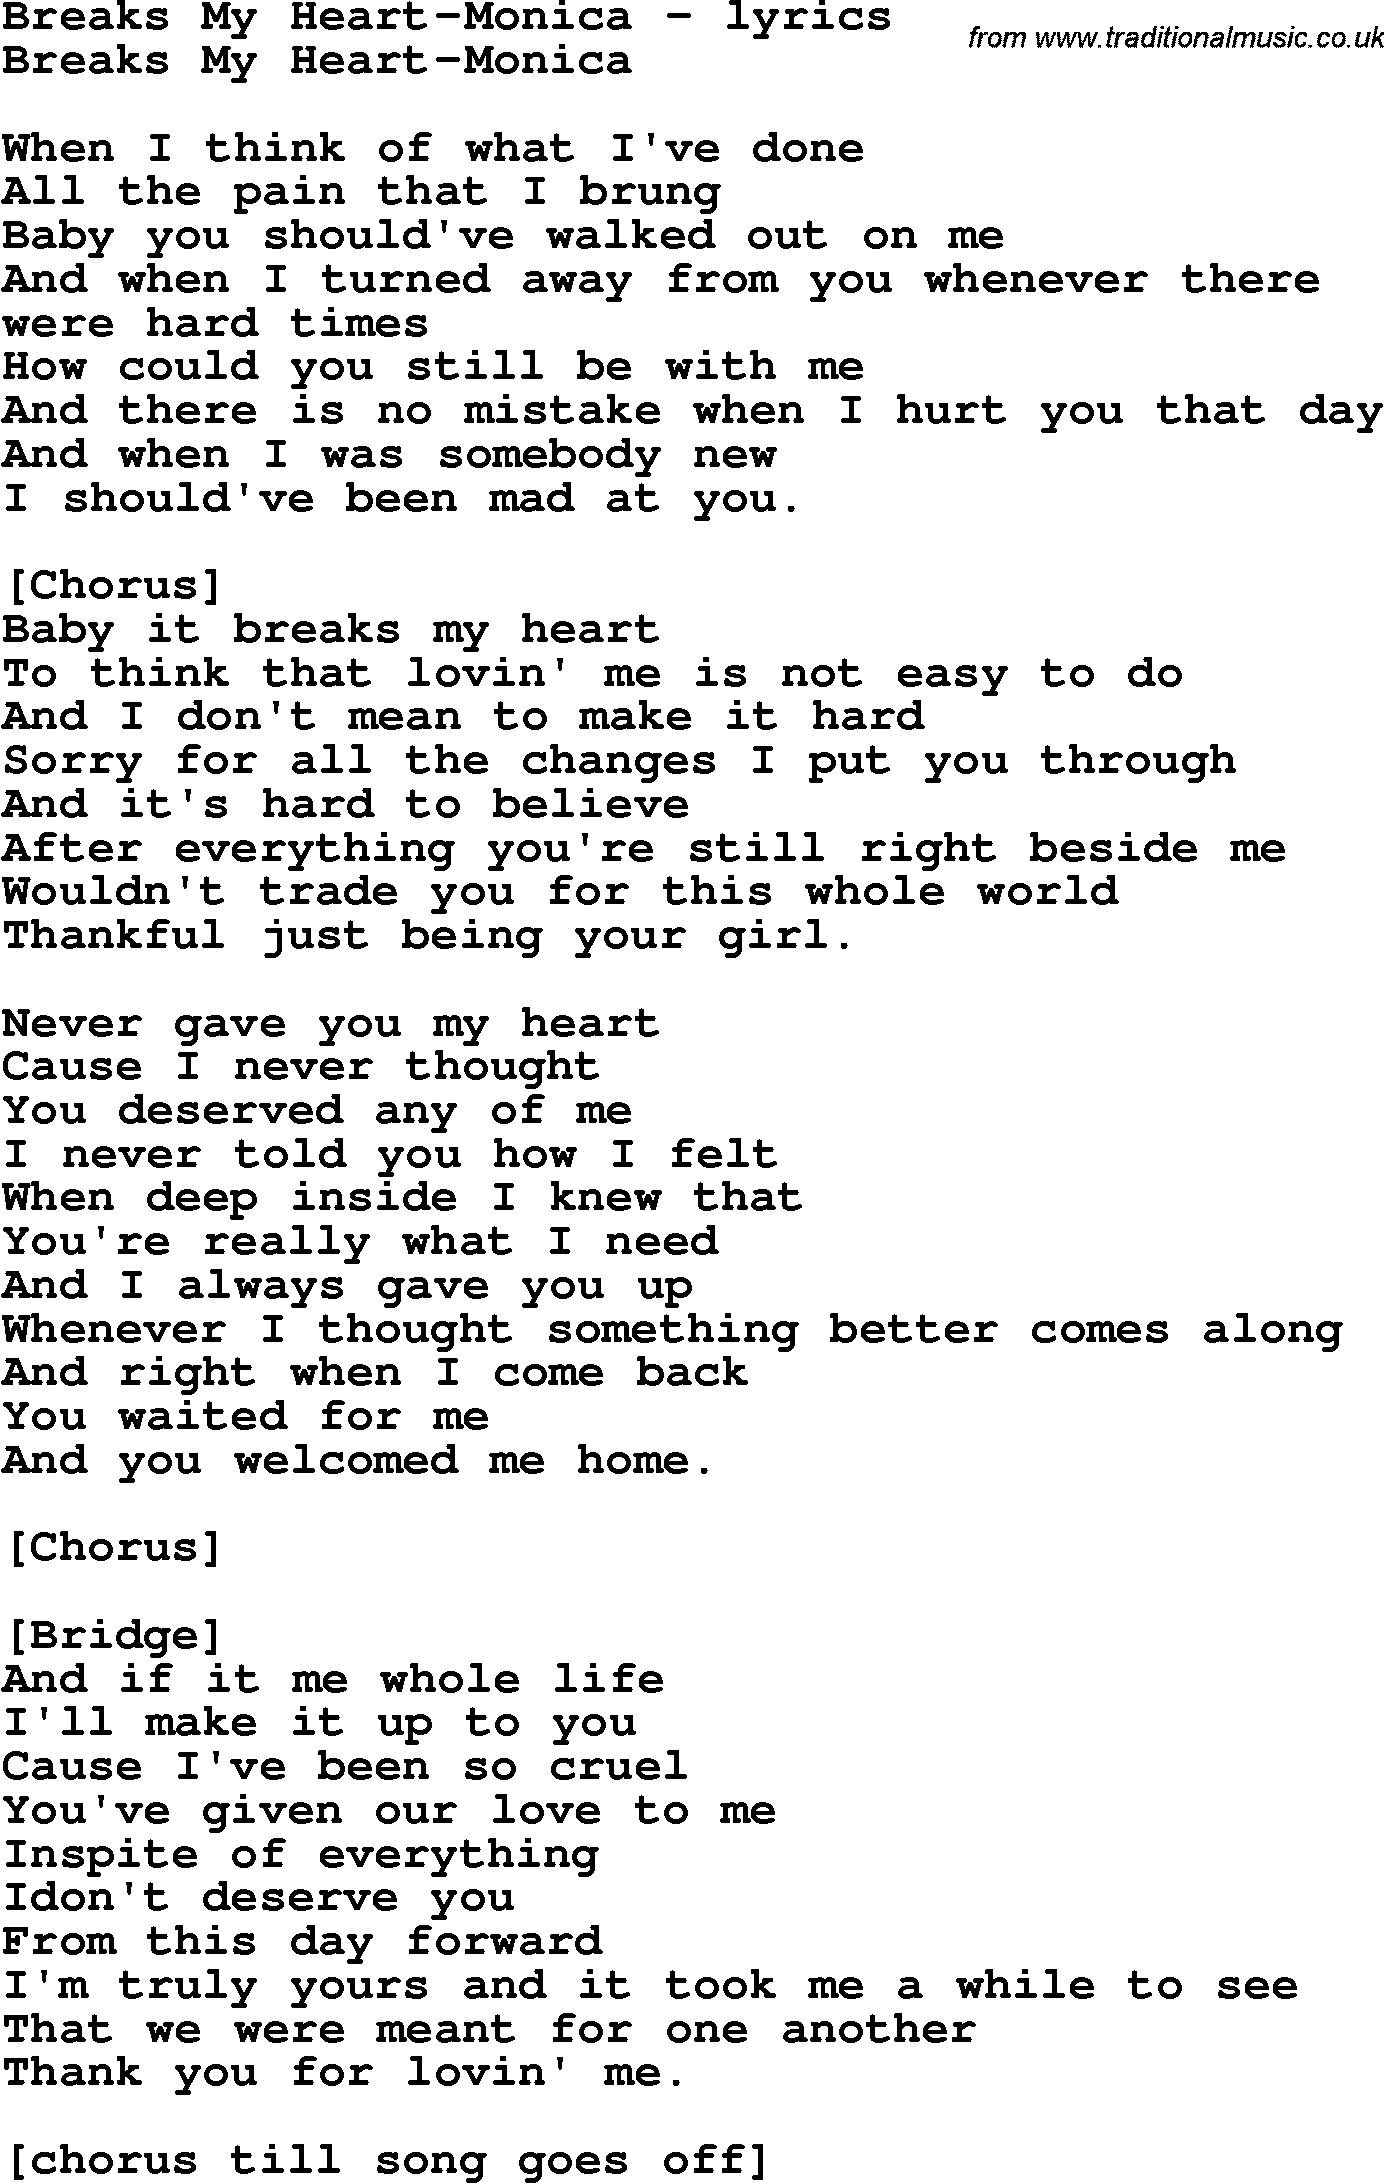 Love Song Lyrics for: Breaks My Heart-Monica